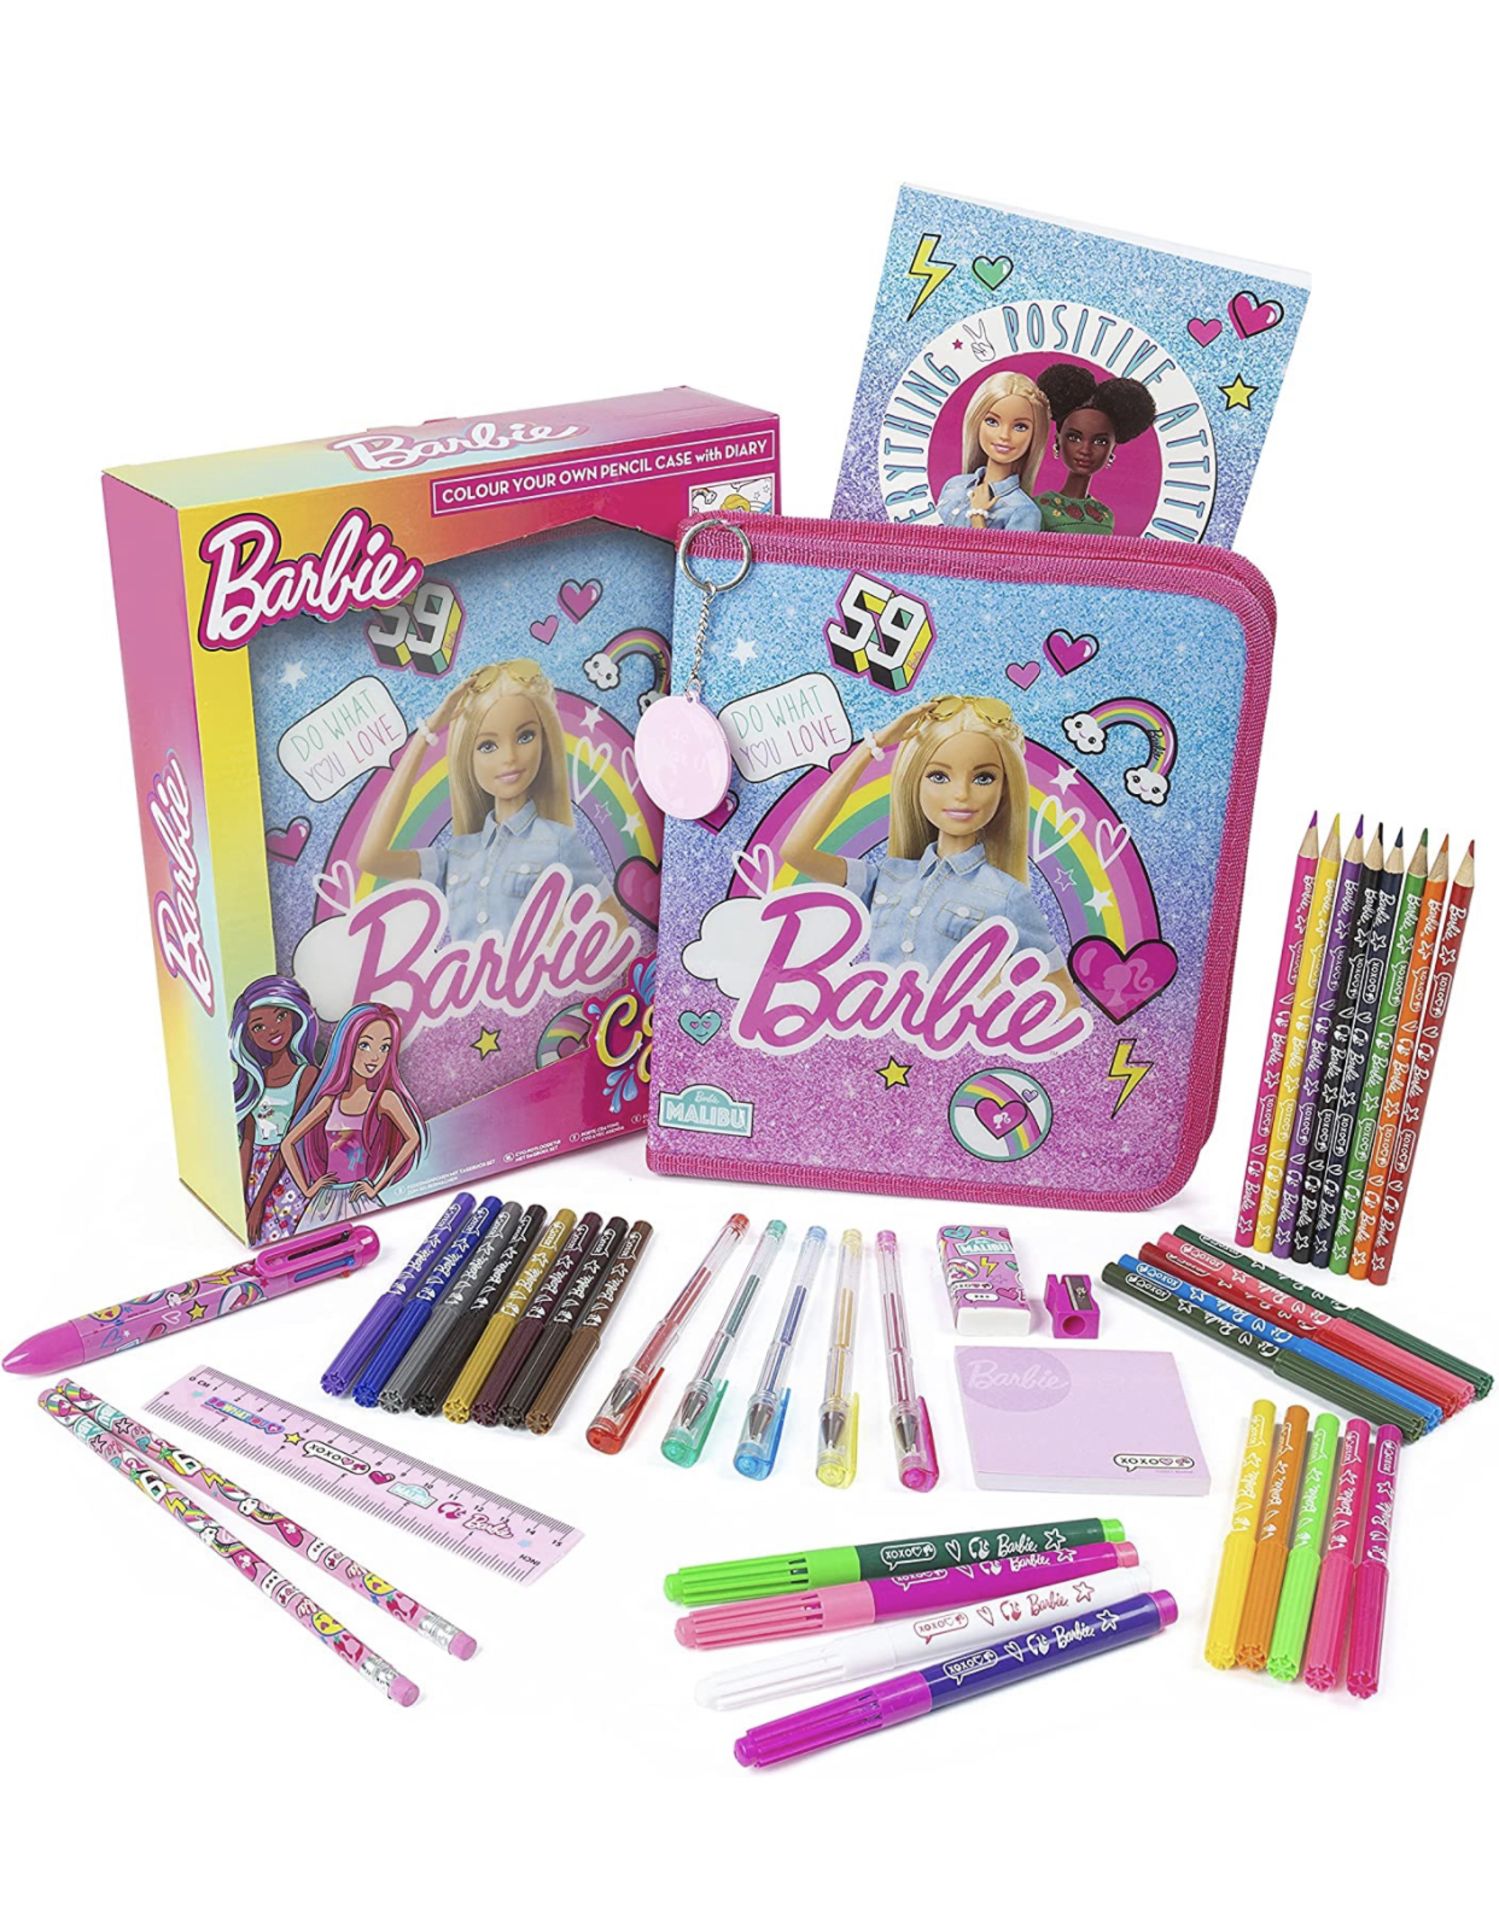 Barbie Colour Your Own Pencil Case Set